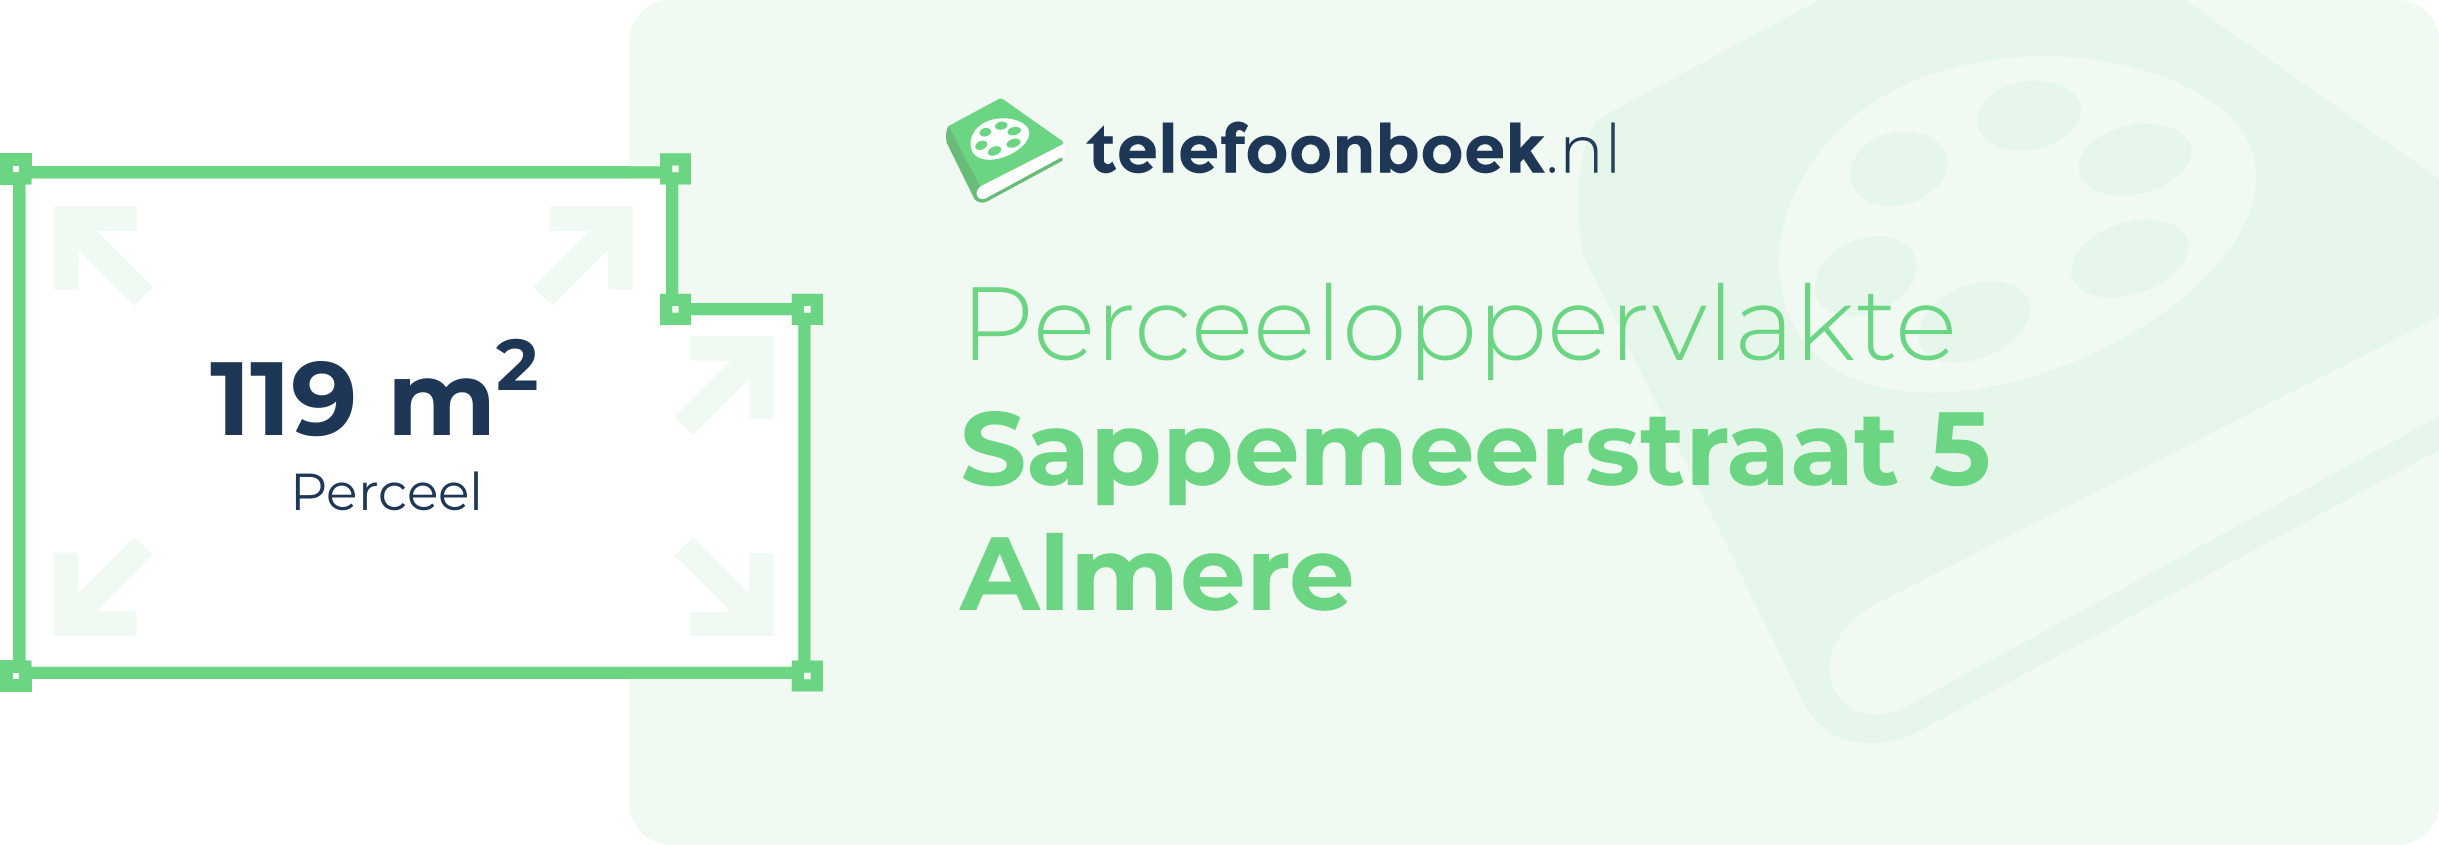 Perceeloppervlakte Sappemeerstraat 5 Almere